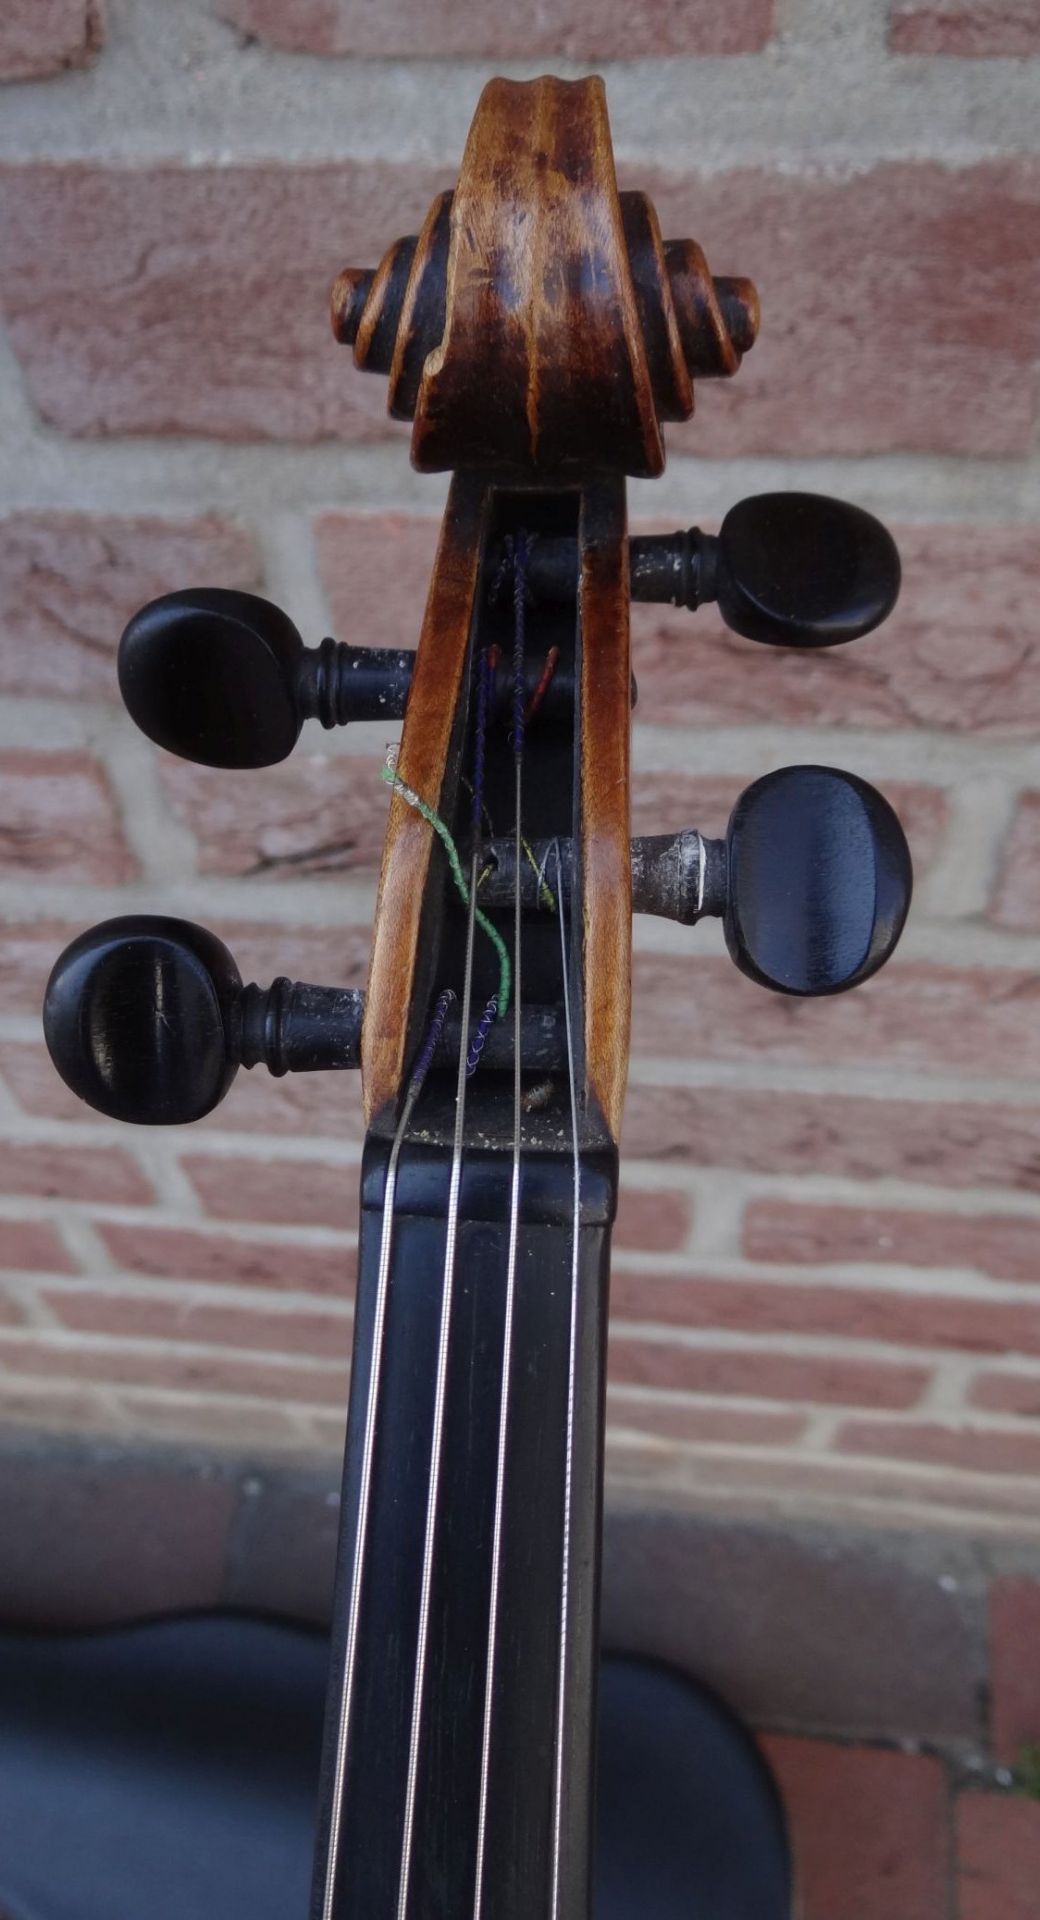 alte Geige im Koffer, innen Etikett "Ciovan Paolo Meggine", 19/20 Jhd?, L-62 cm, gut erhalten - Bild 3 aus 10